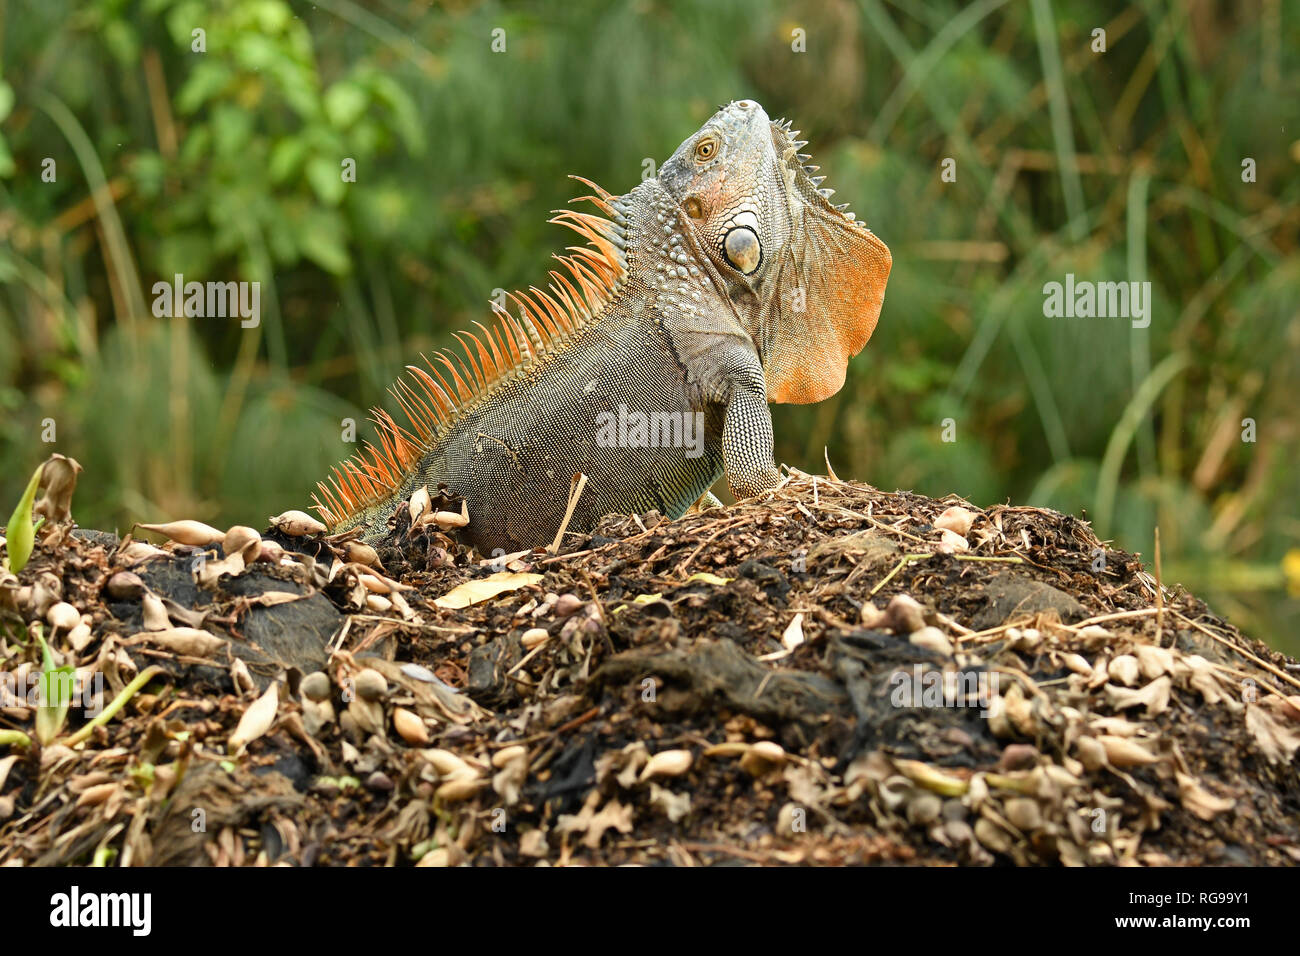 Comune o verde (Iguana Iguana iguana) maschio adulto nella riproduzione dei colori, visualizzazione di minaccia aggressiva postura, Turrialba, Costa Rica, Ottobre Foto Stock